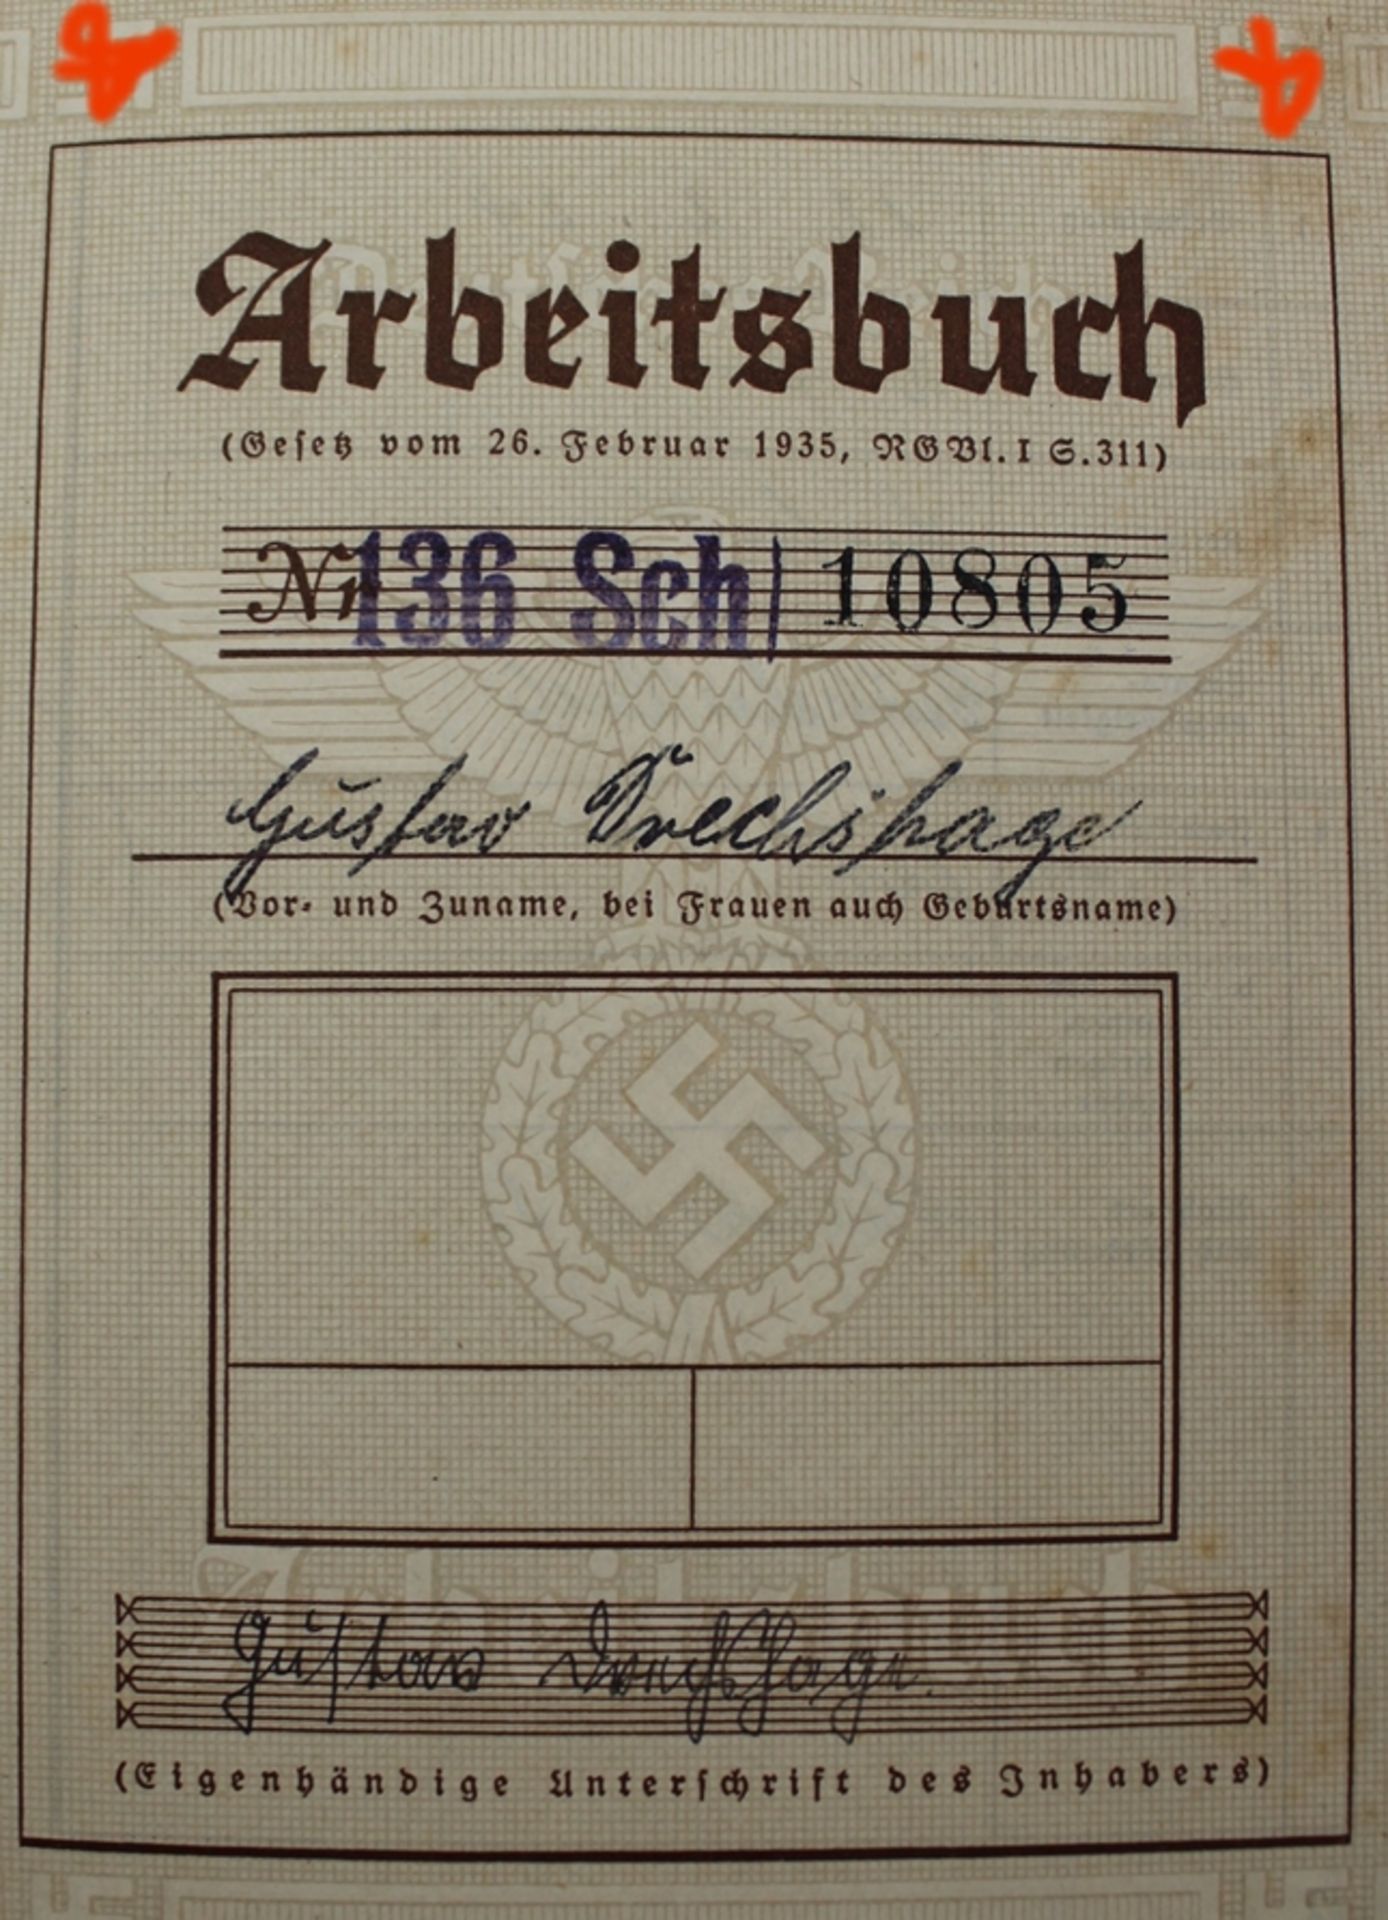 Sammelalbum "Deutschland erwacht", Arbeitsbuch und Zeugnisheft, 3. Reich, Album in schlechter Erhal - Image 3 of 5